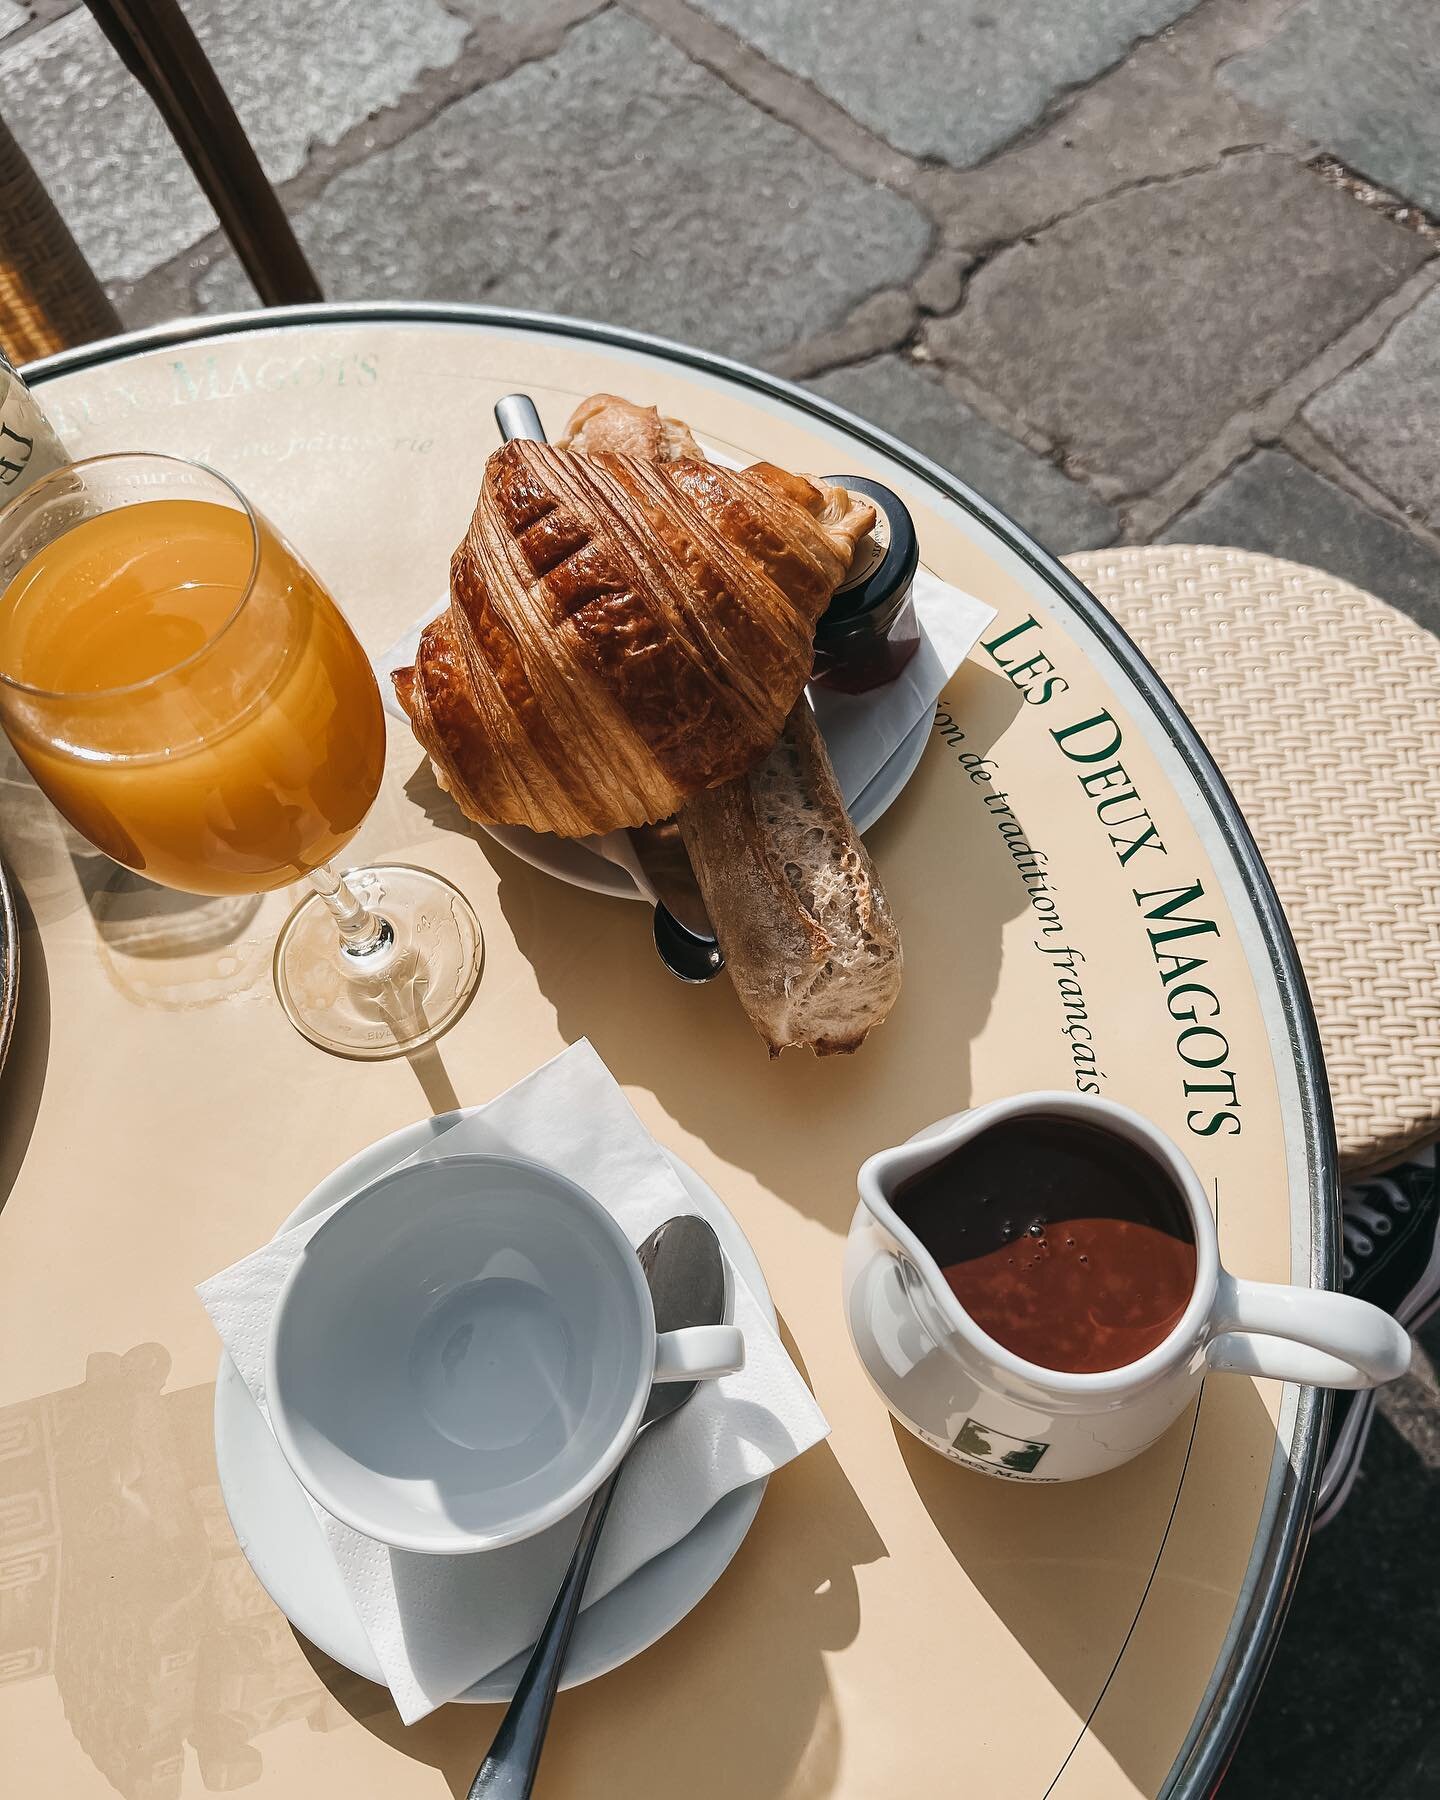 lex-deux-magots-paris-breakfast - wit & whimsy